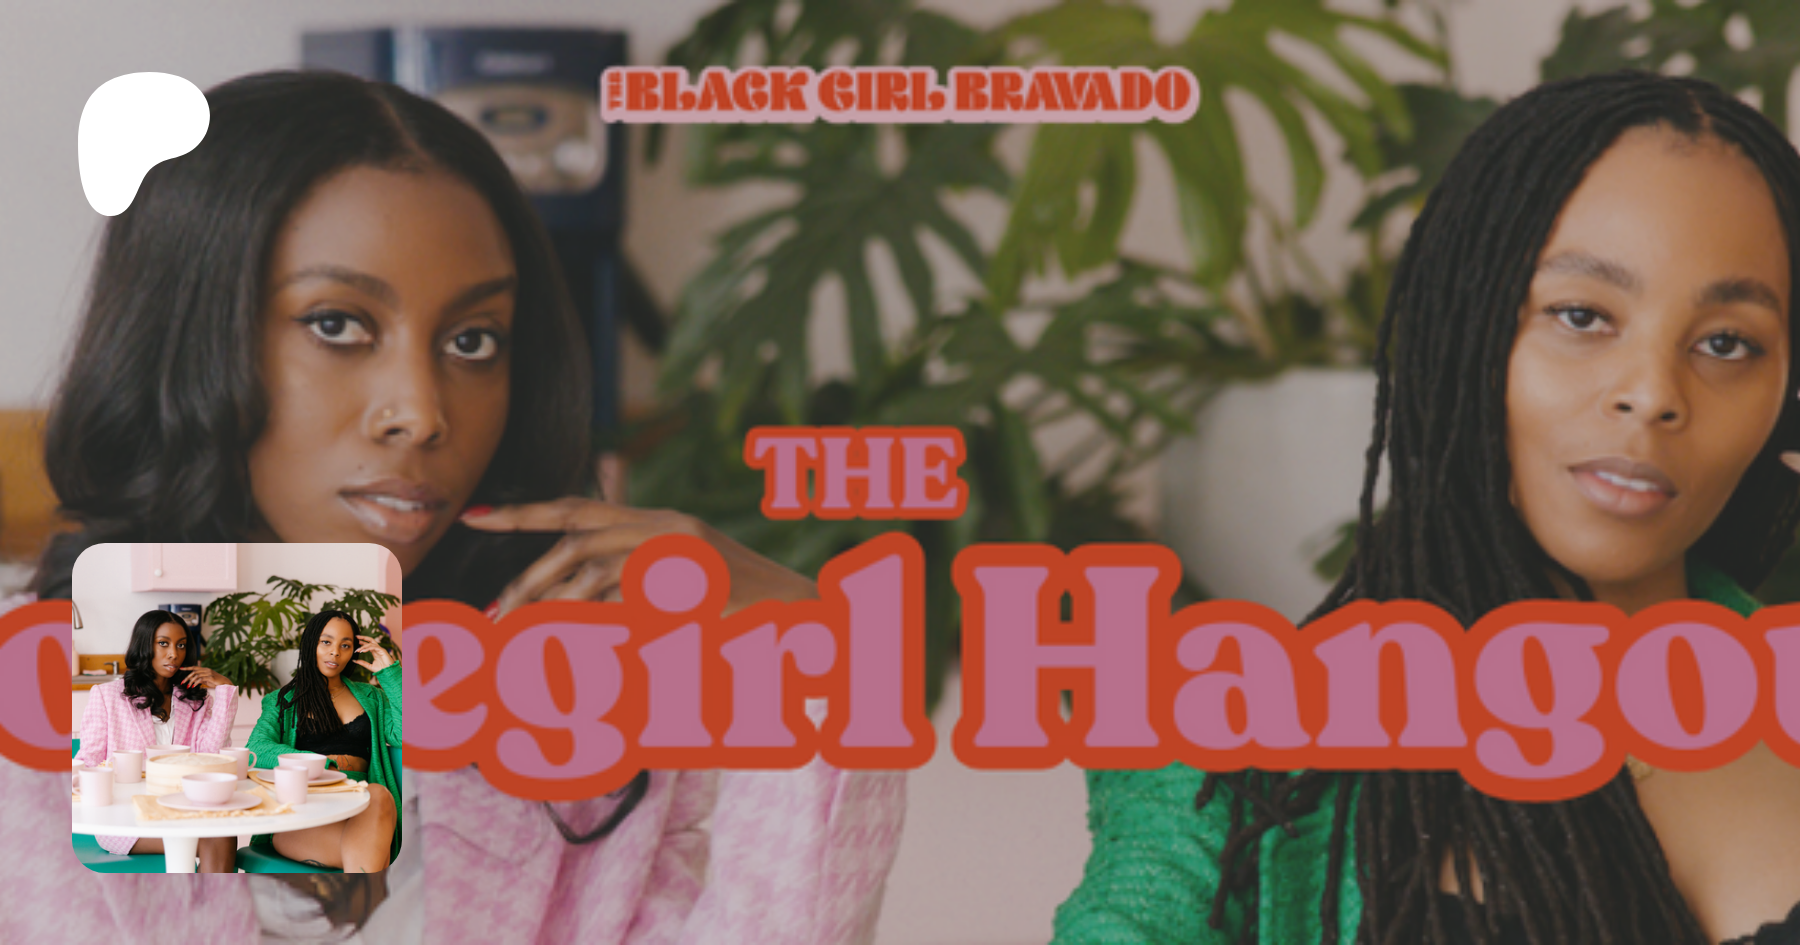 The Black Girl Bravado Podcast